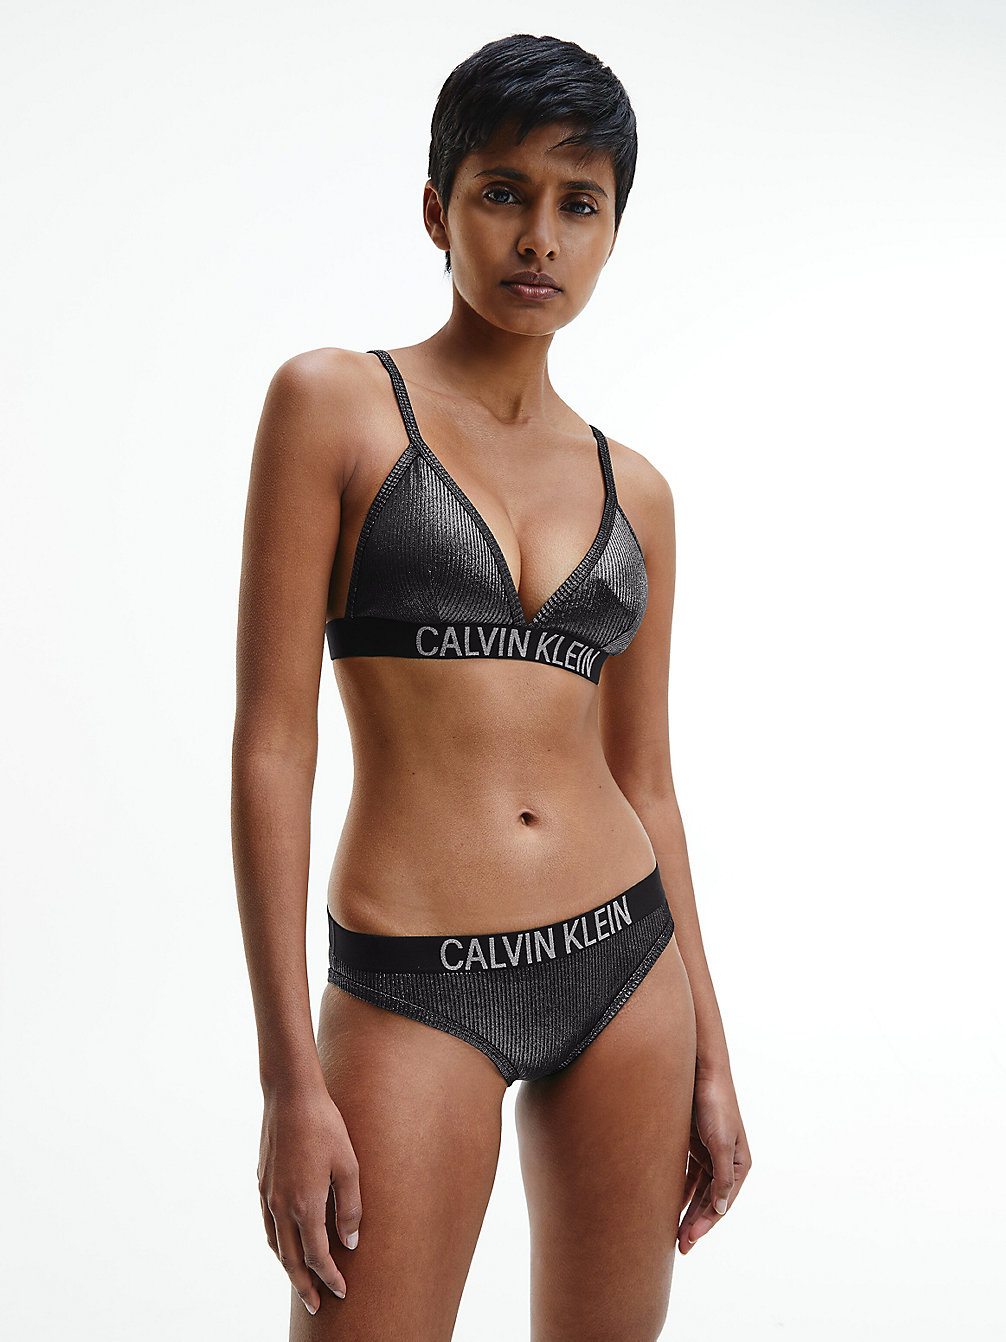 Calvin klein signature logo bikini sale